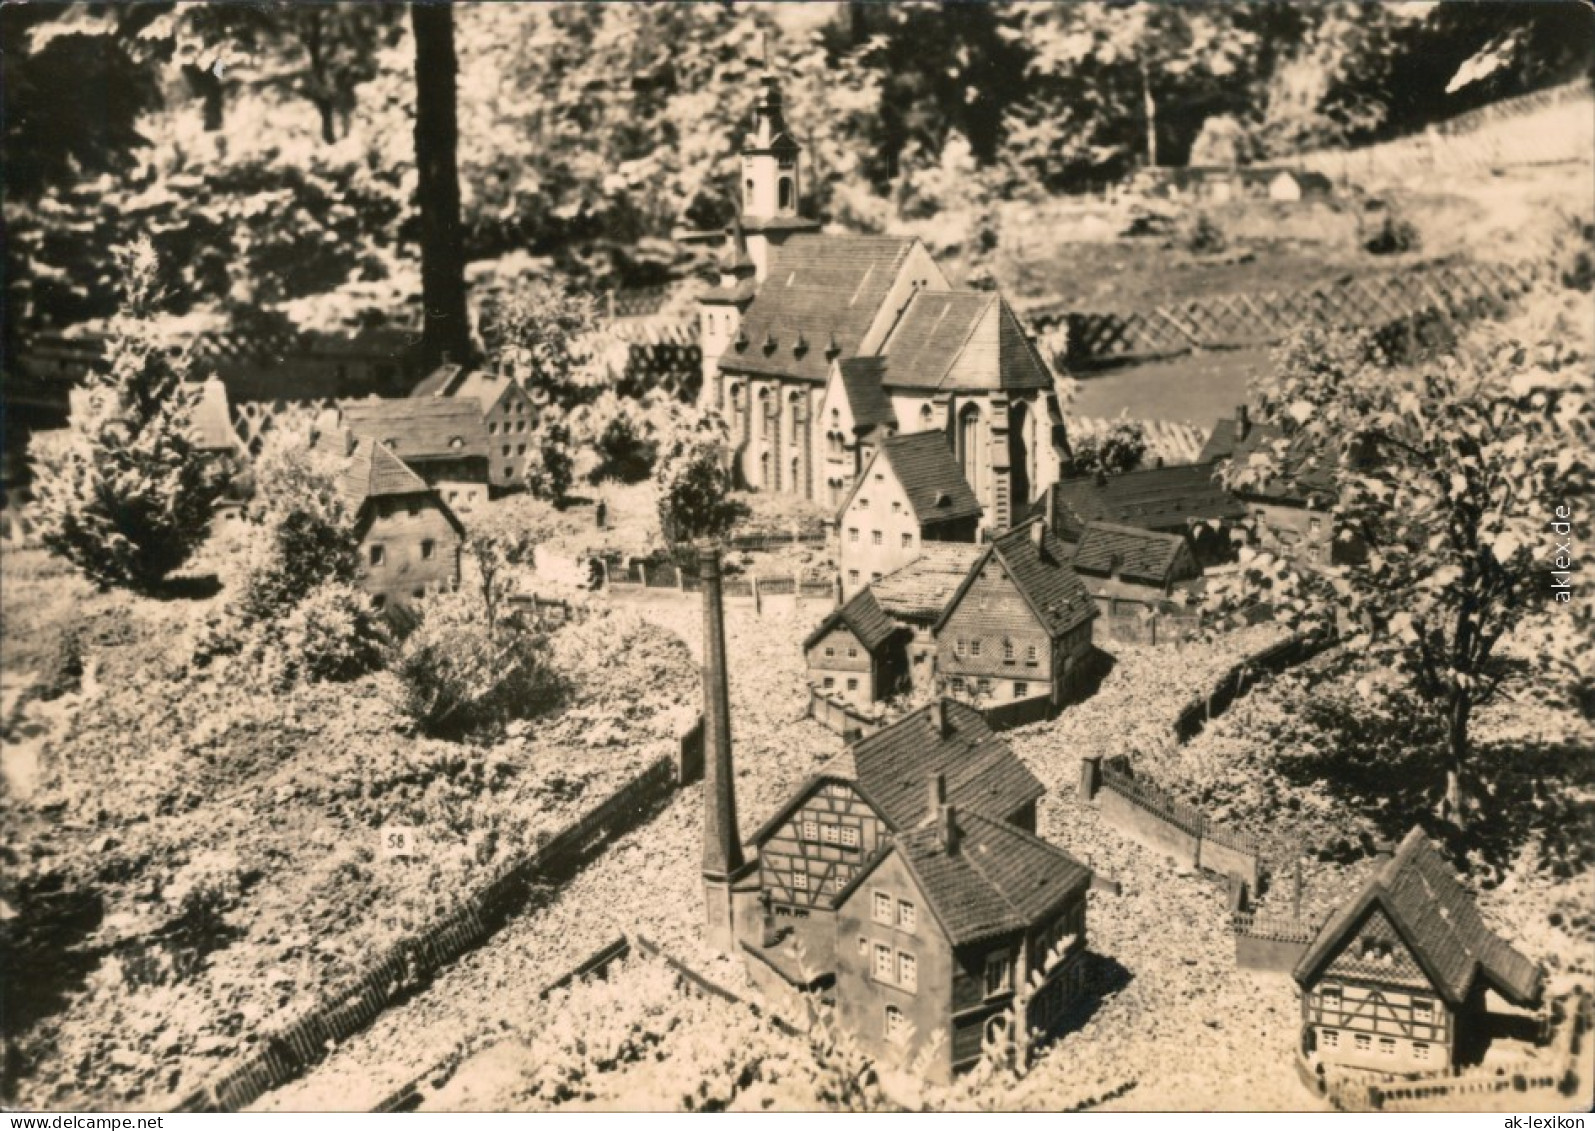 Ansichtskarte Oederan Miniaturpark Klein-Erzgebirge 1975 - Oederan